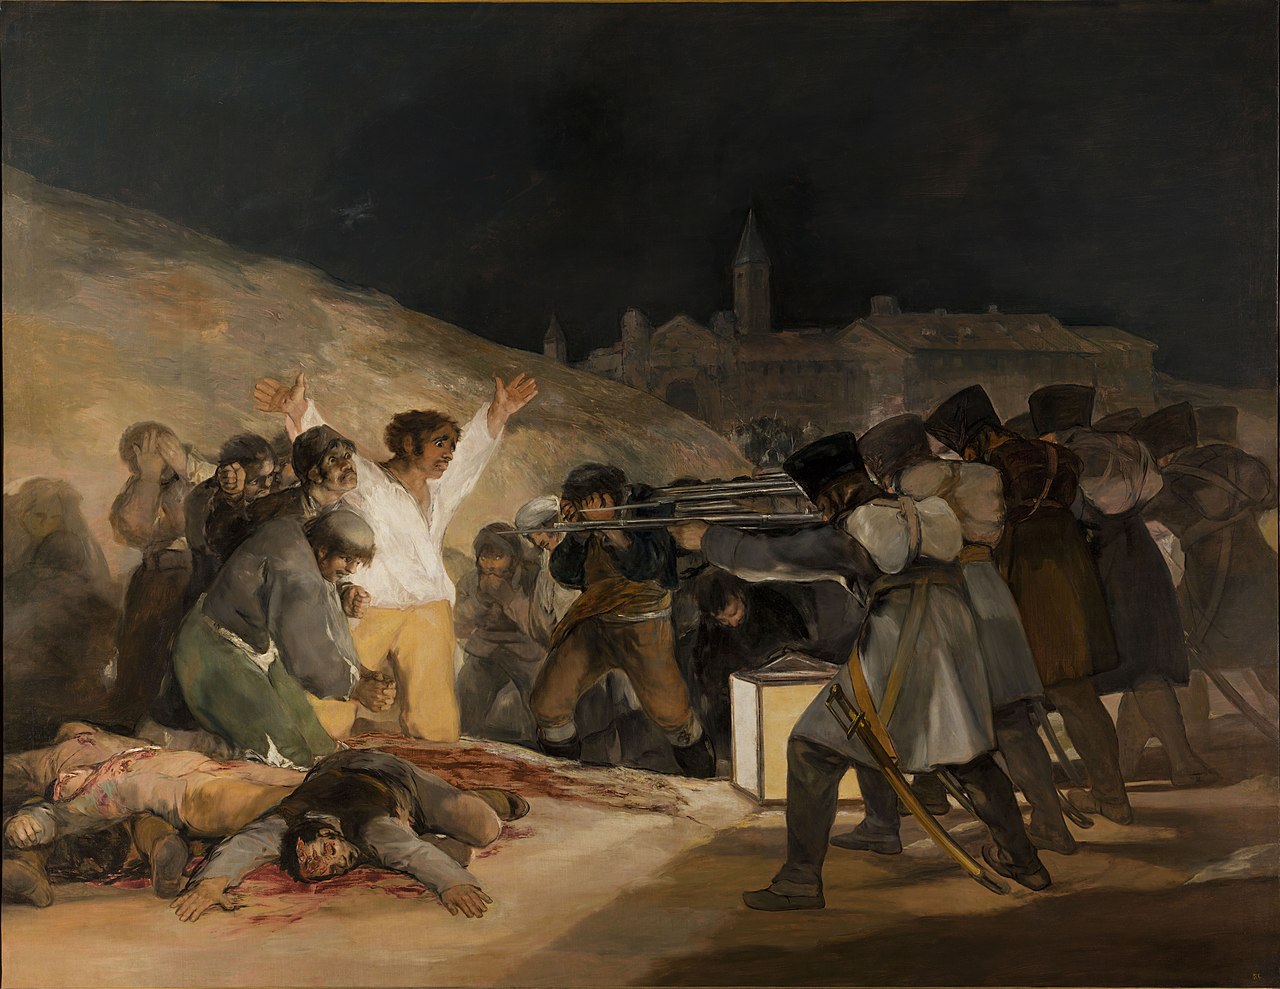 3 במאי 1808 במדריד